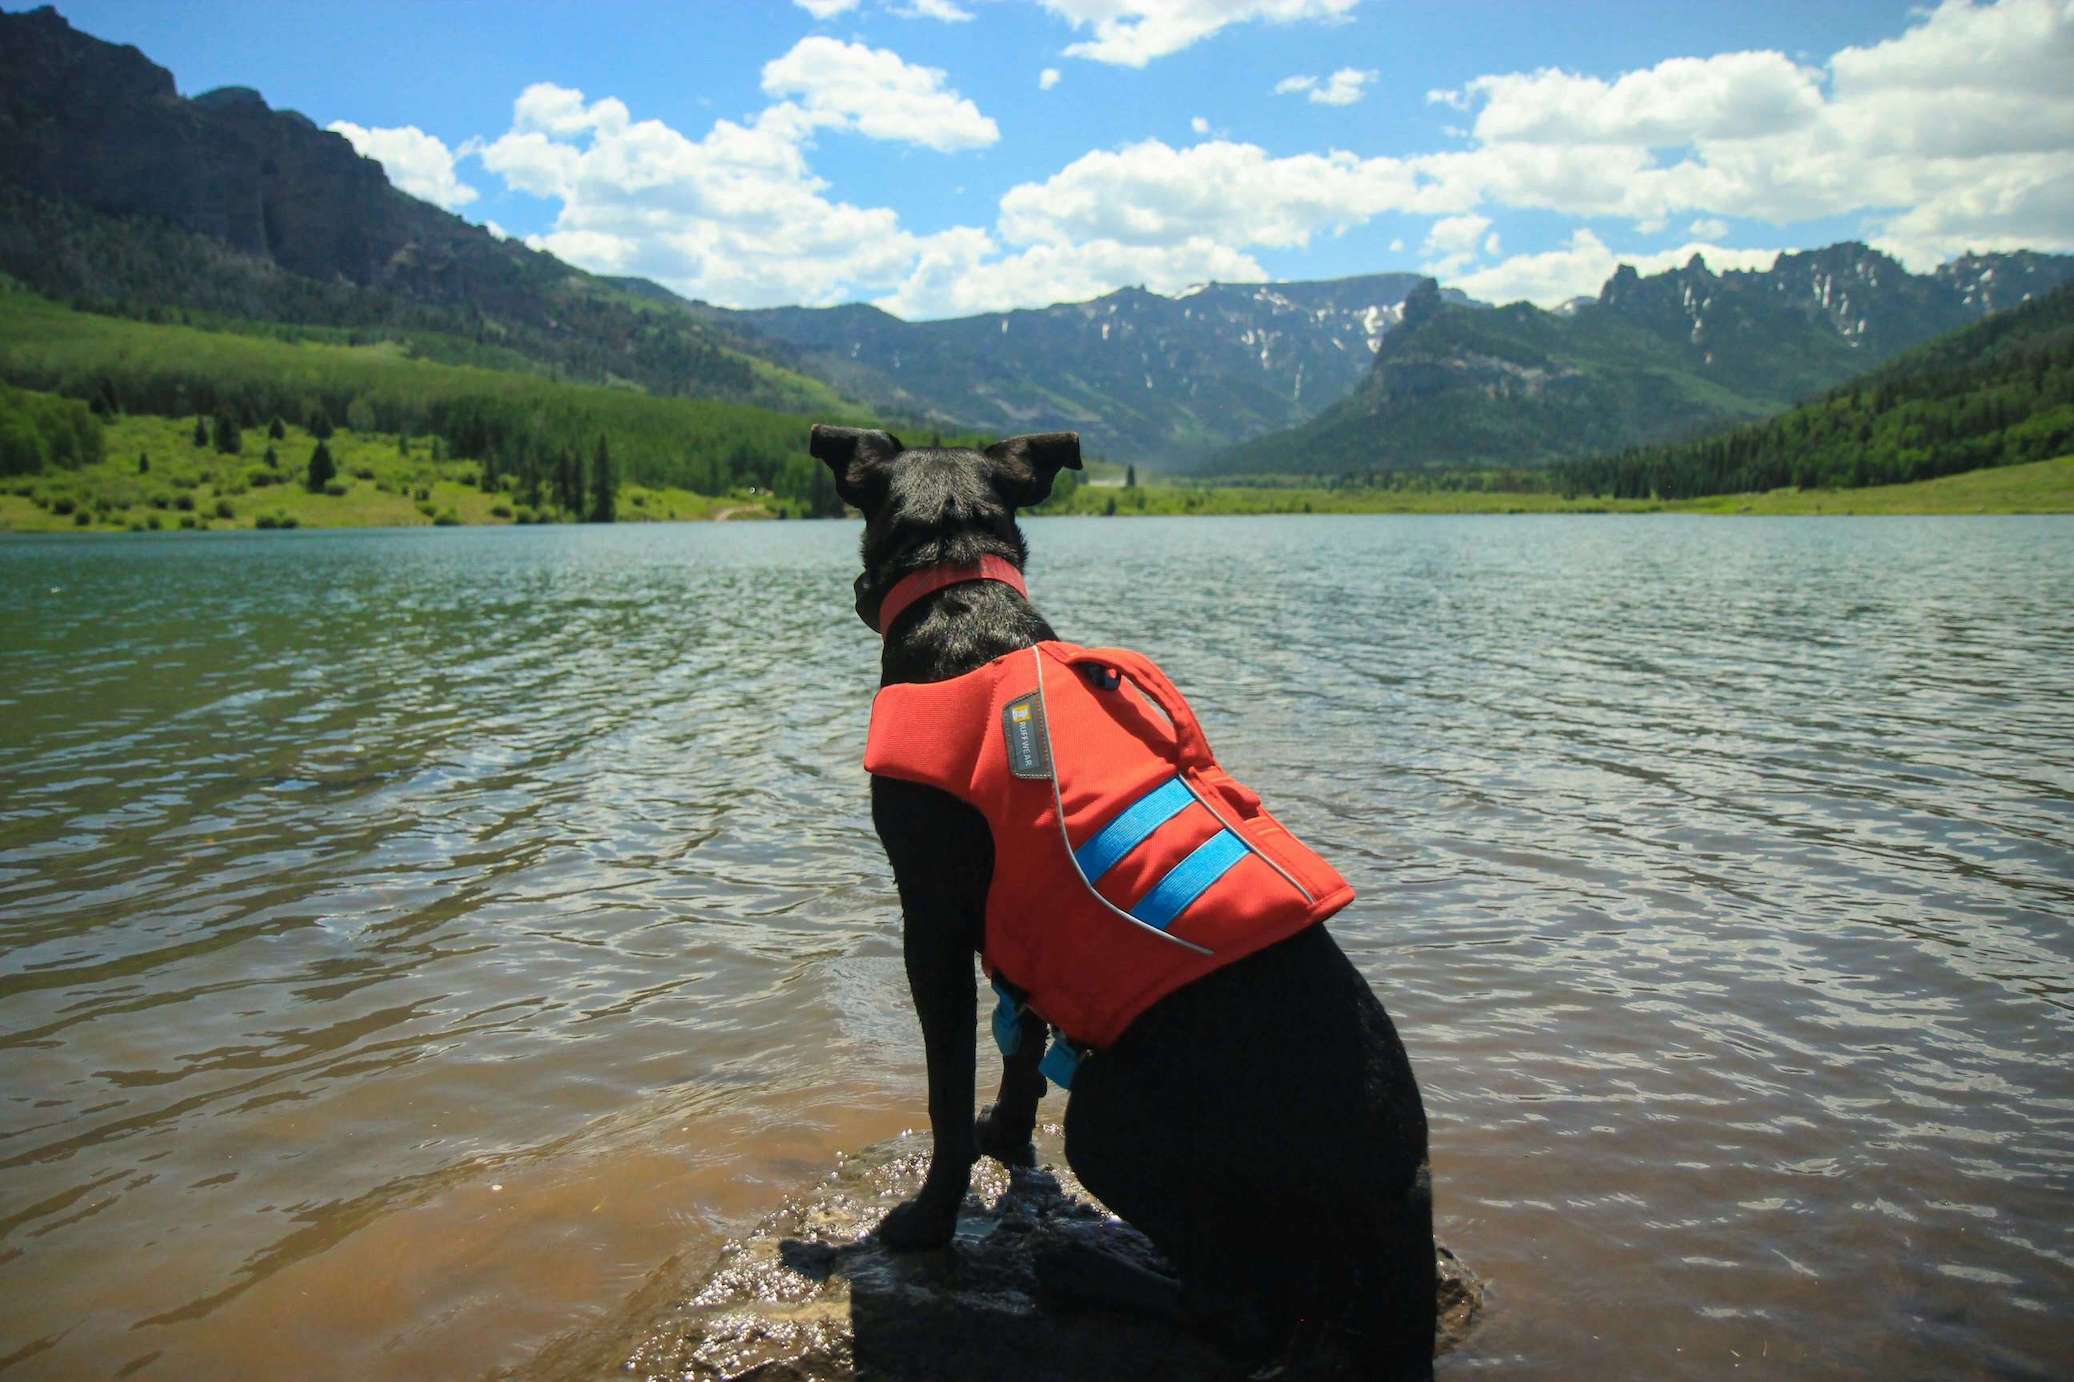 Brauner Hund trägt Schwimmweste